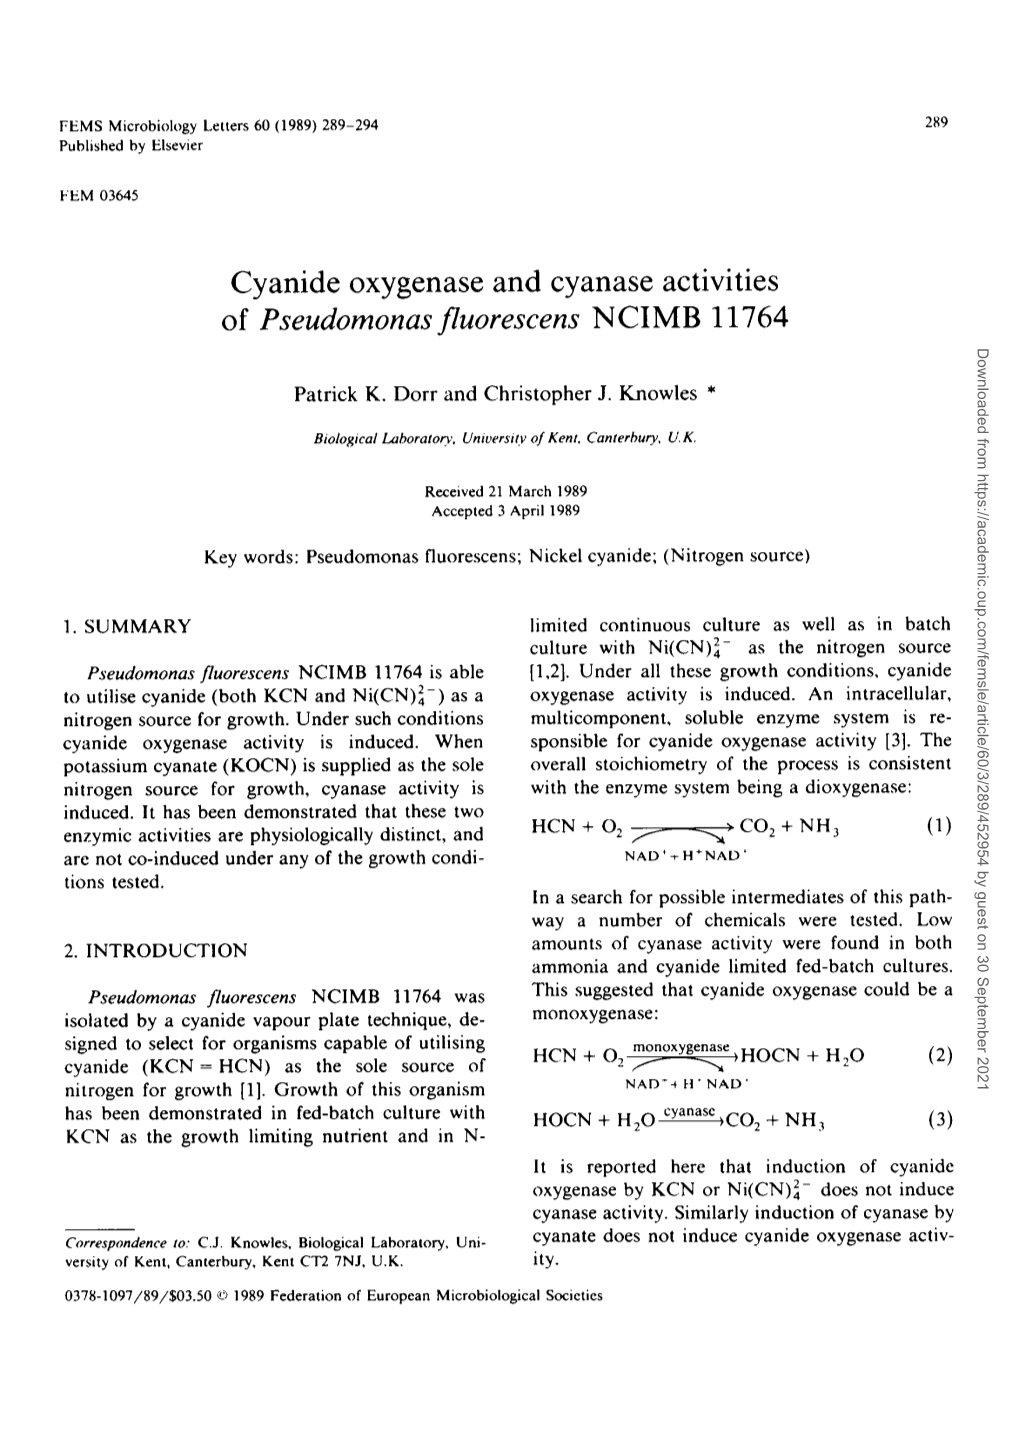 Cyanide Oxygenase and Cyanase Activities of Pseudomonas